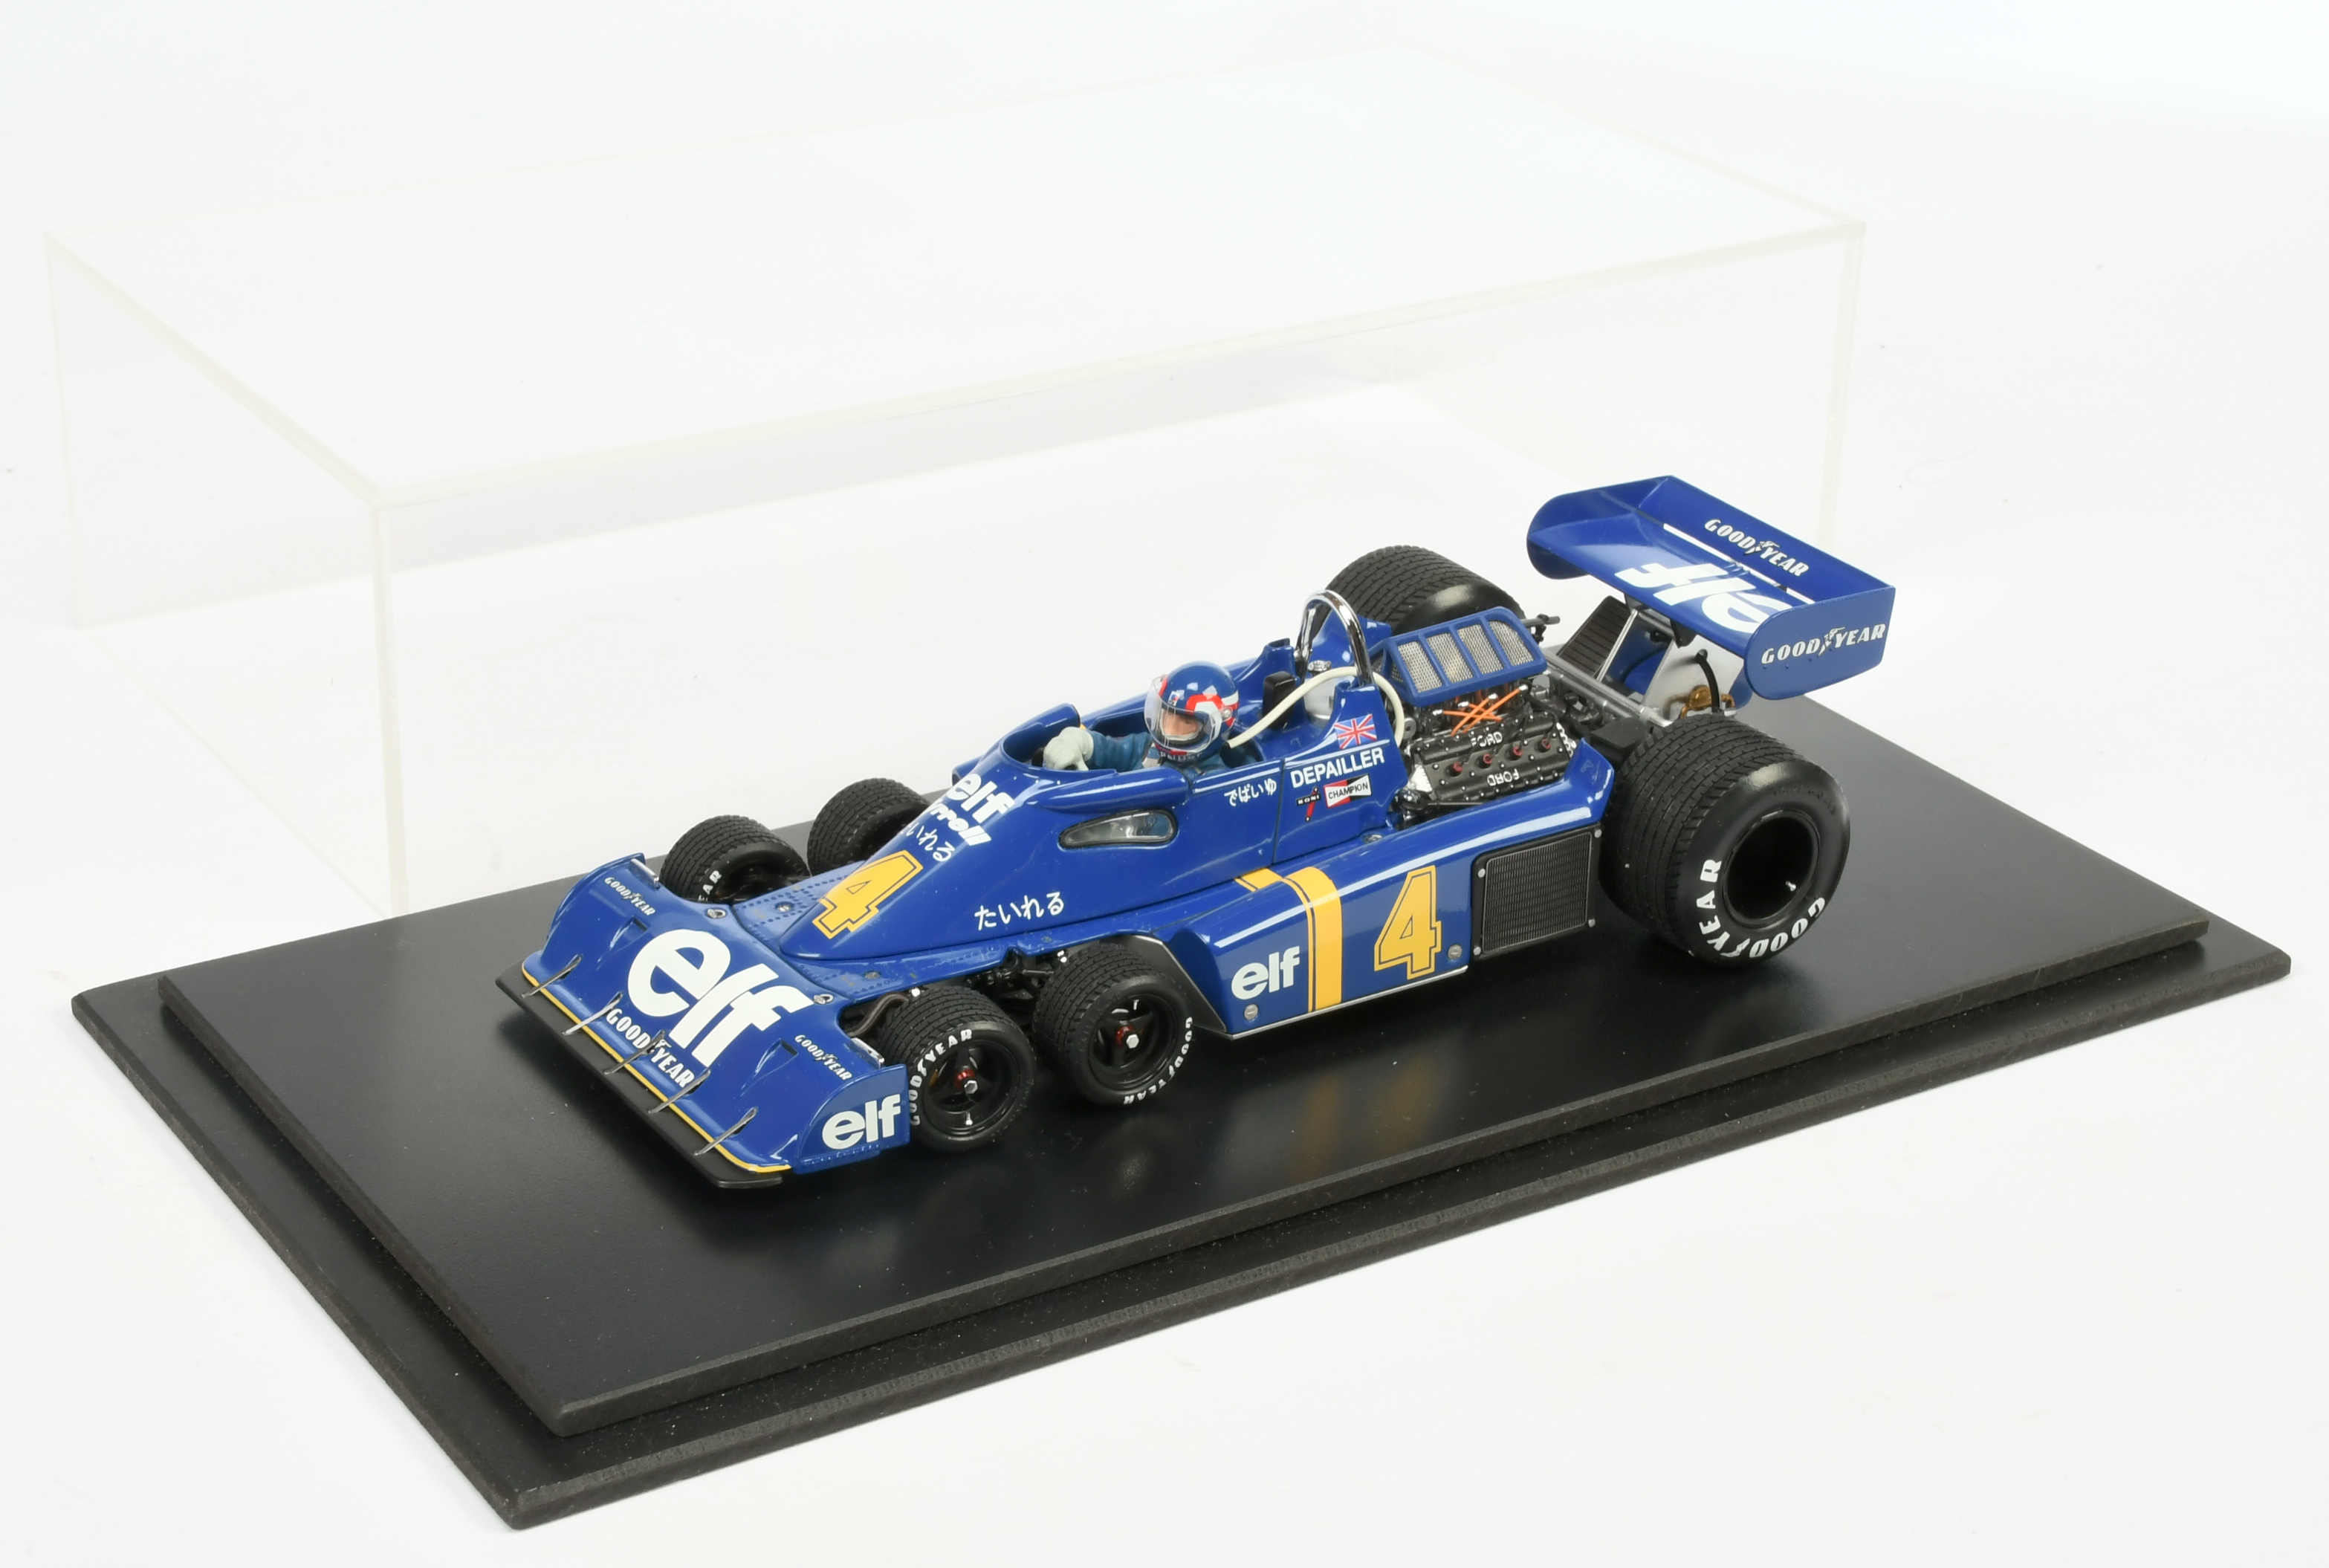 Exoto 1/18 scale model racing car - "Depailler elf Tyrrell" racing number 4 -